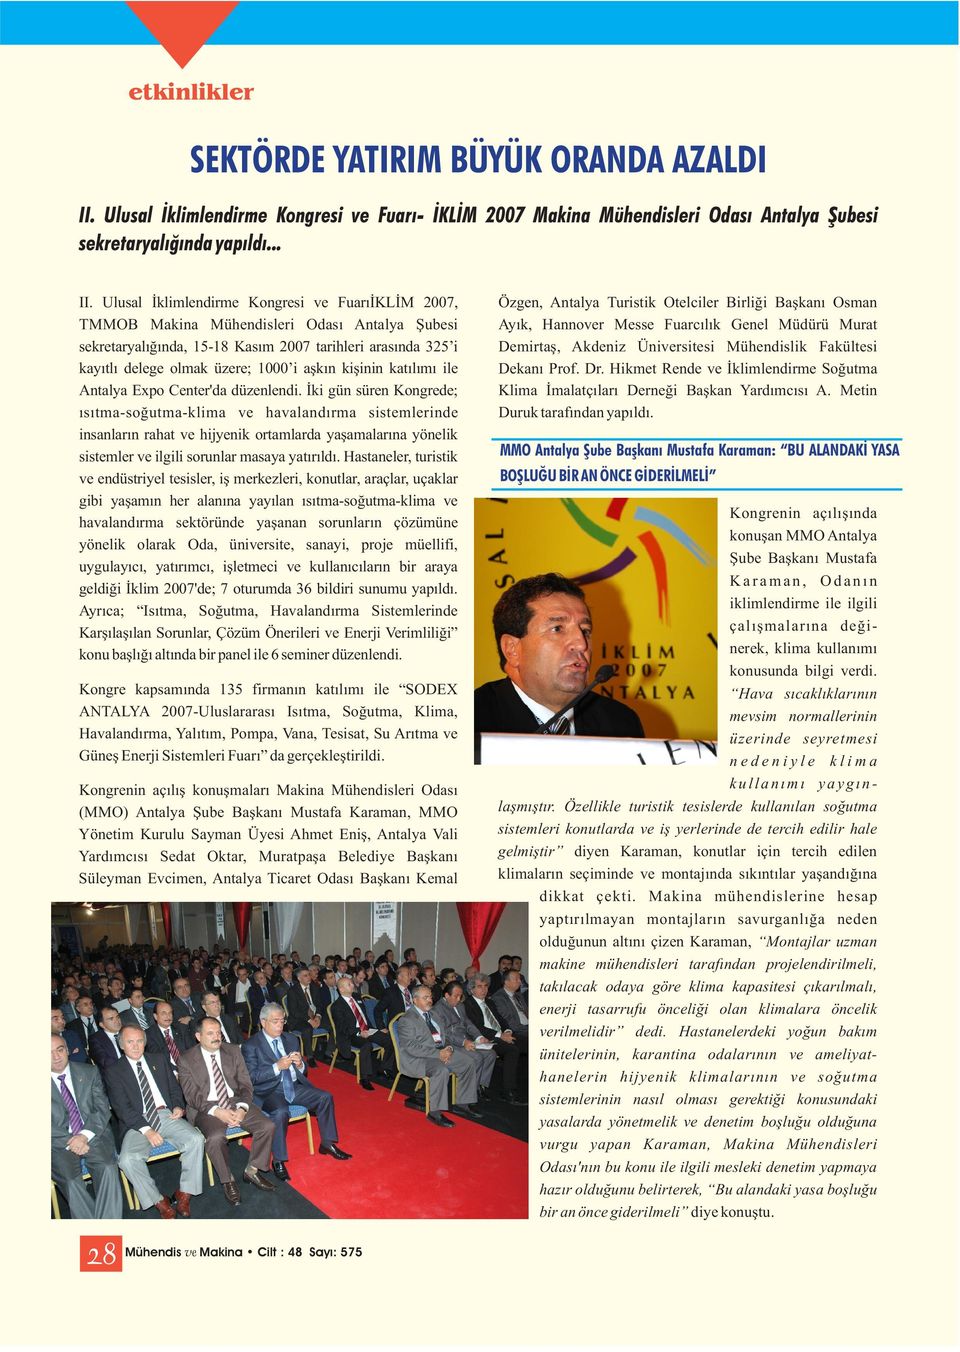 Ulusal İklimlendirme Kongresi ve FuarıİKLİM 2007, TMMOB Makina Mühendisleri Odası Antalya Şubesi sekretaryalığında, 15-18 Kasım 2007 tarihleri arasında 325 i kayıtlı delege olmak üzere; 1000 i aşkın